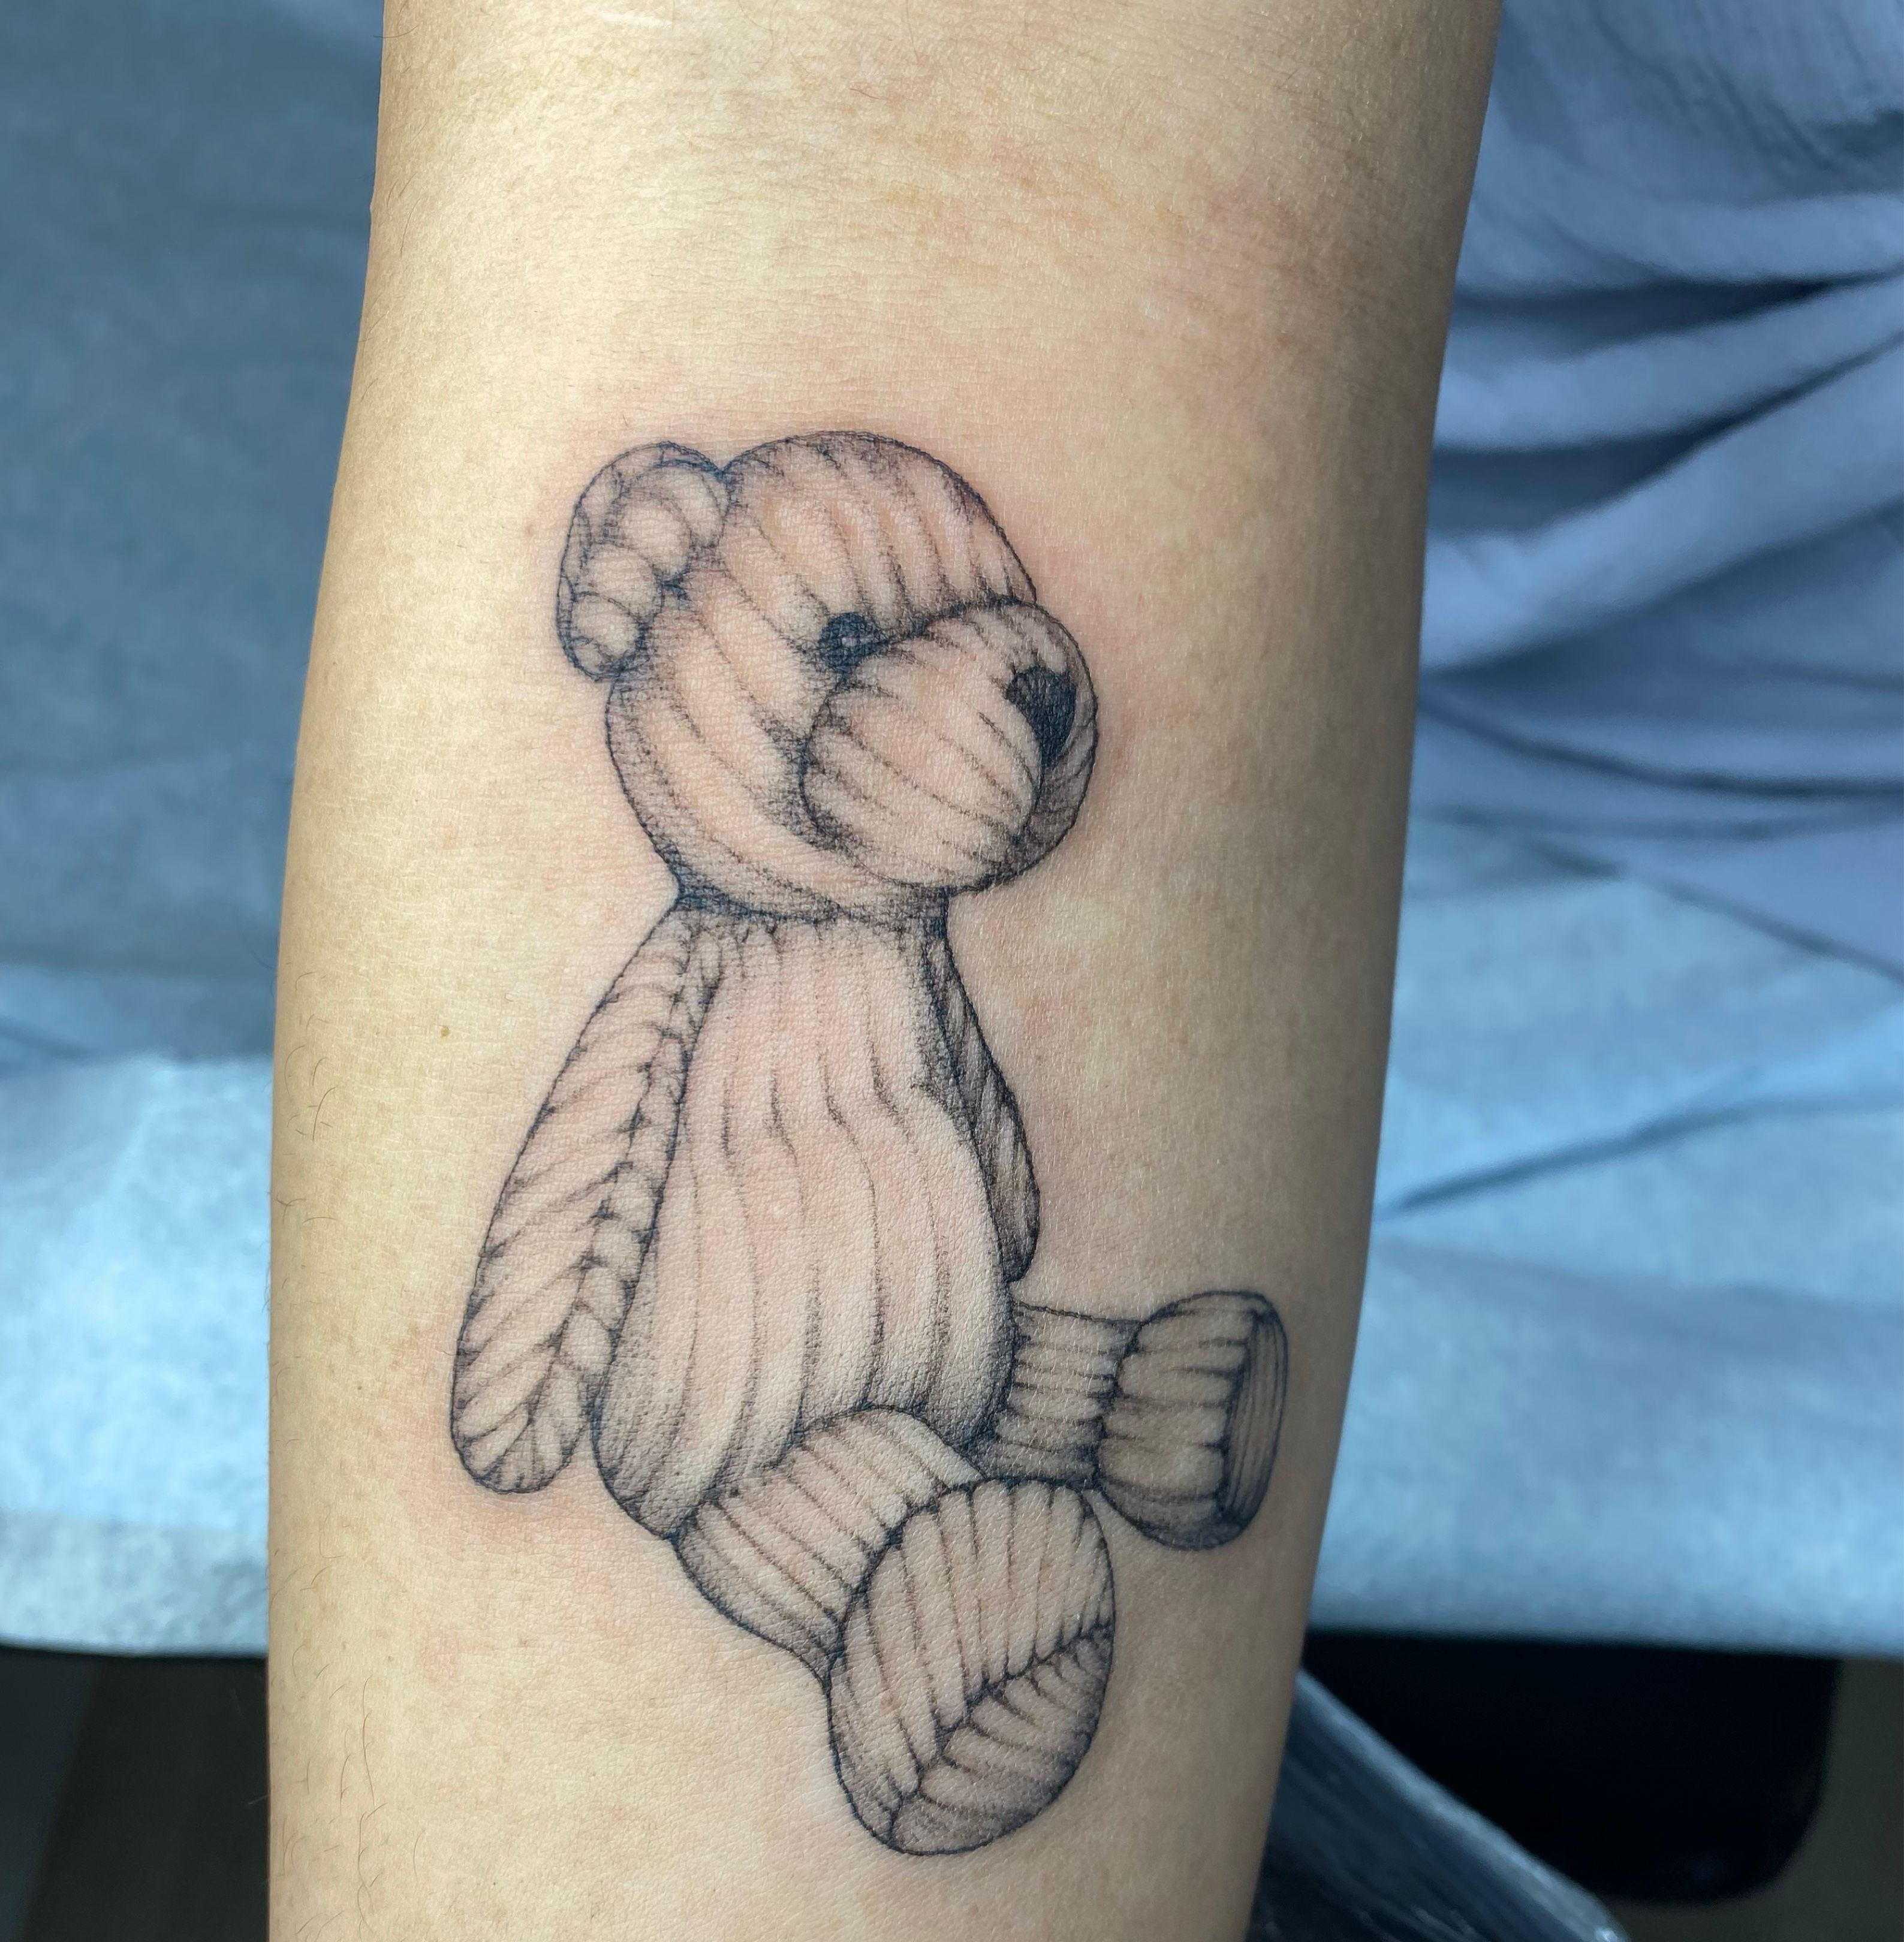 Teddy bear tattoos